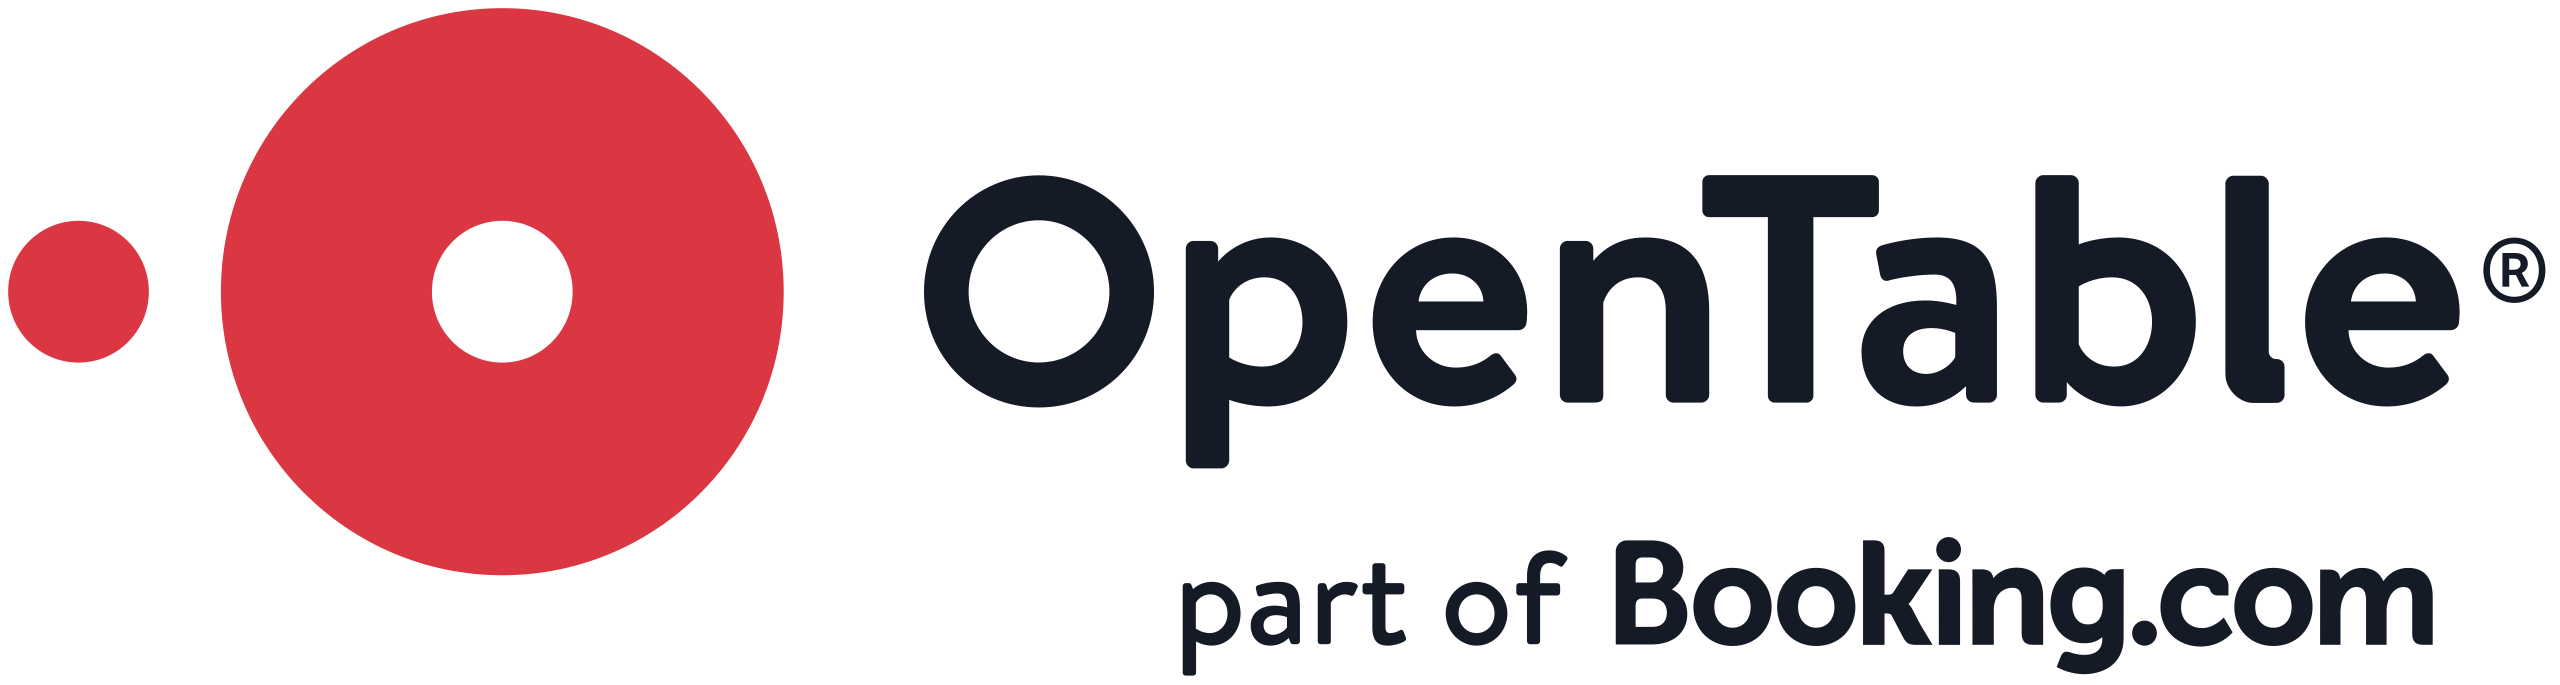 Opentable logo - Social media & Logos Icons